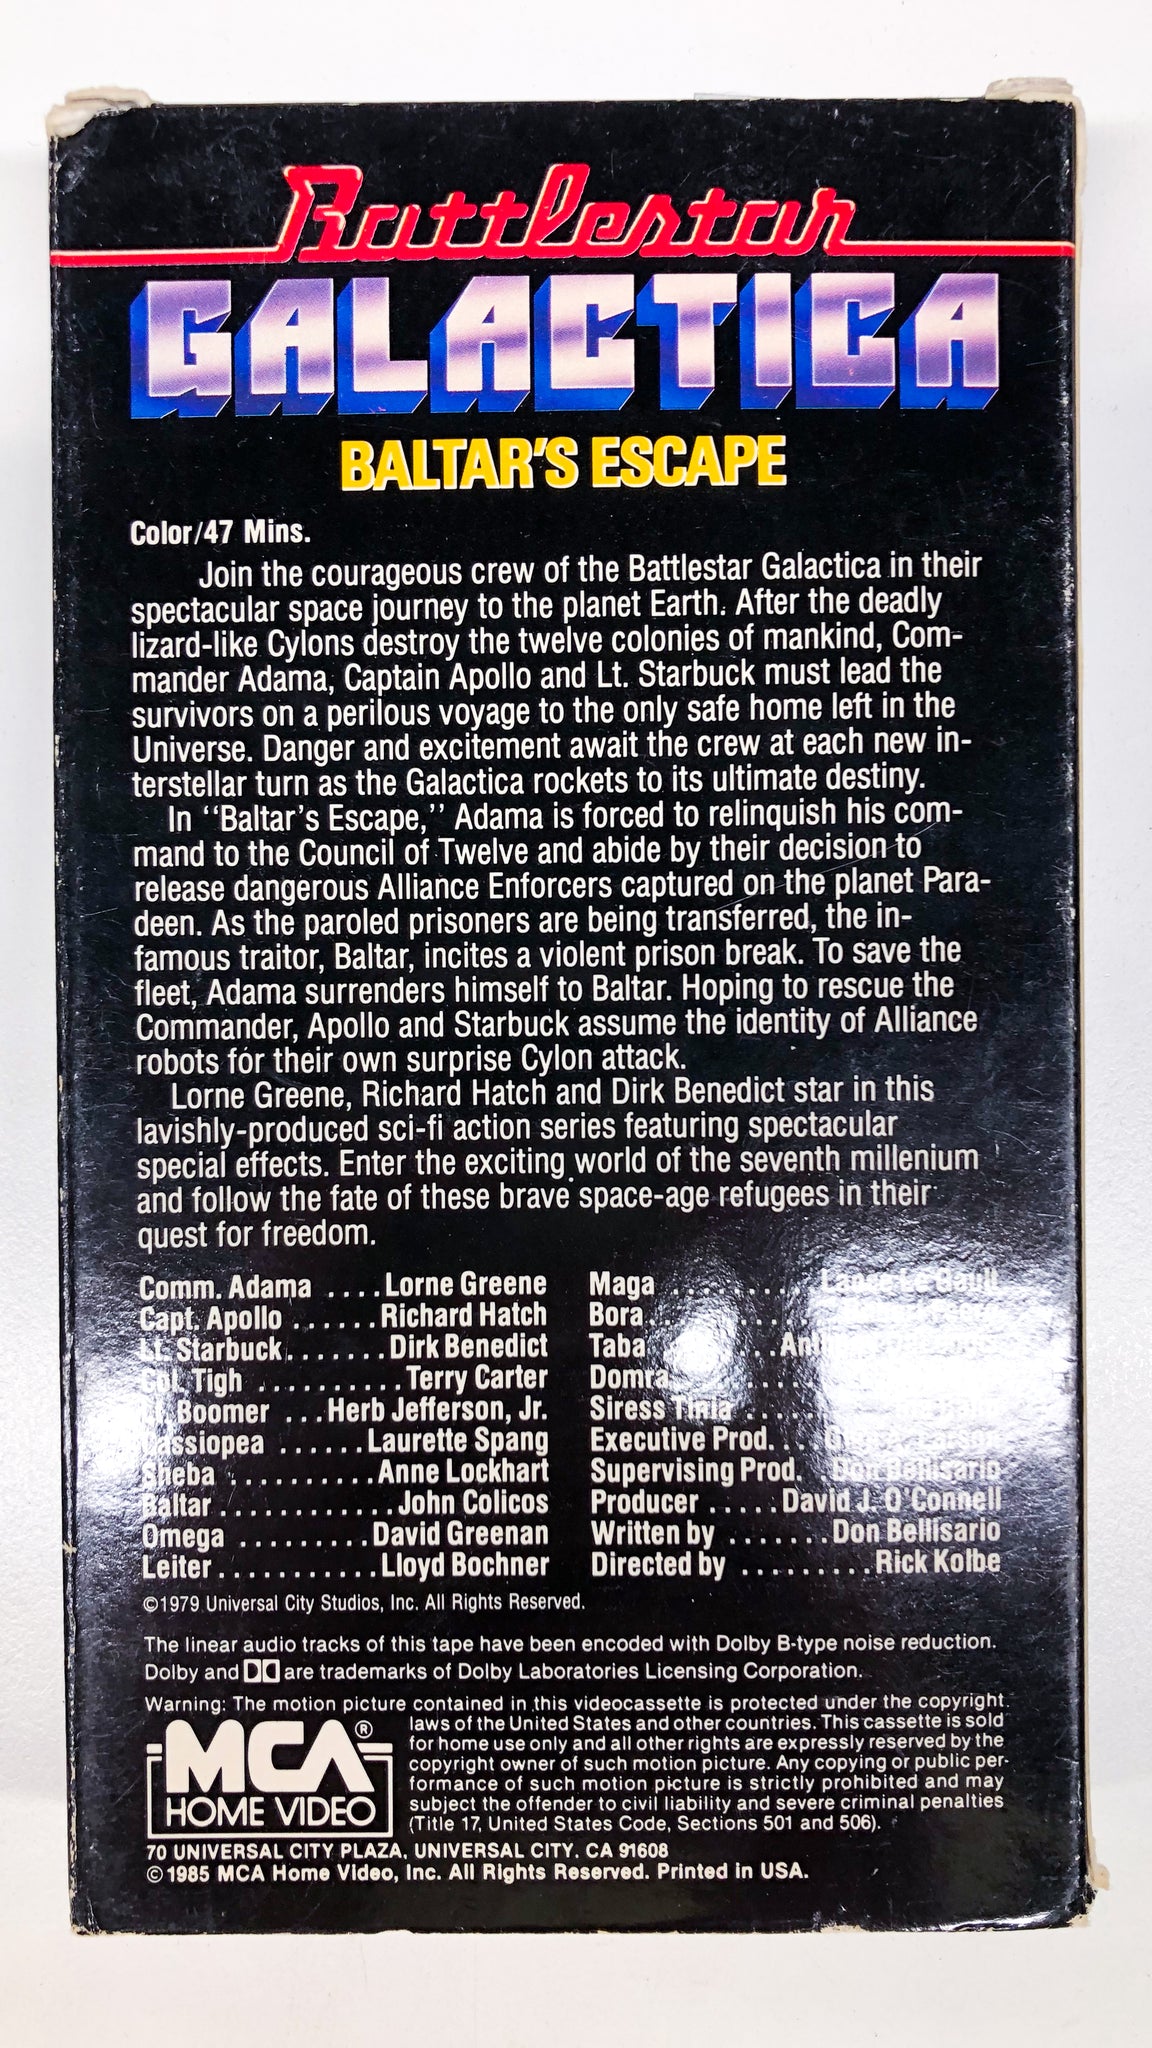 Battlestar Galactica: Baltar's Escape